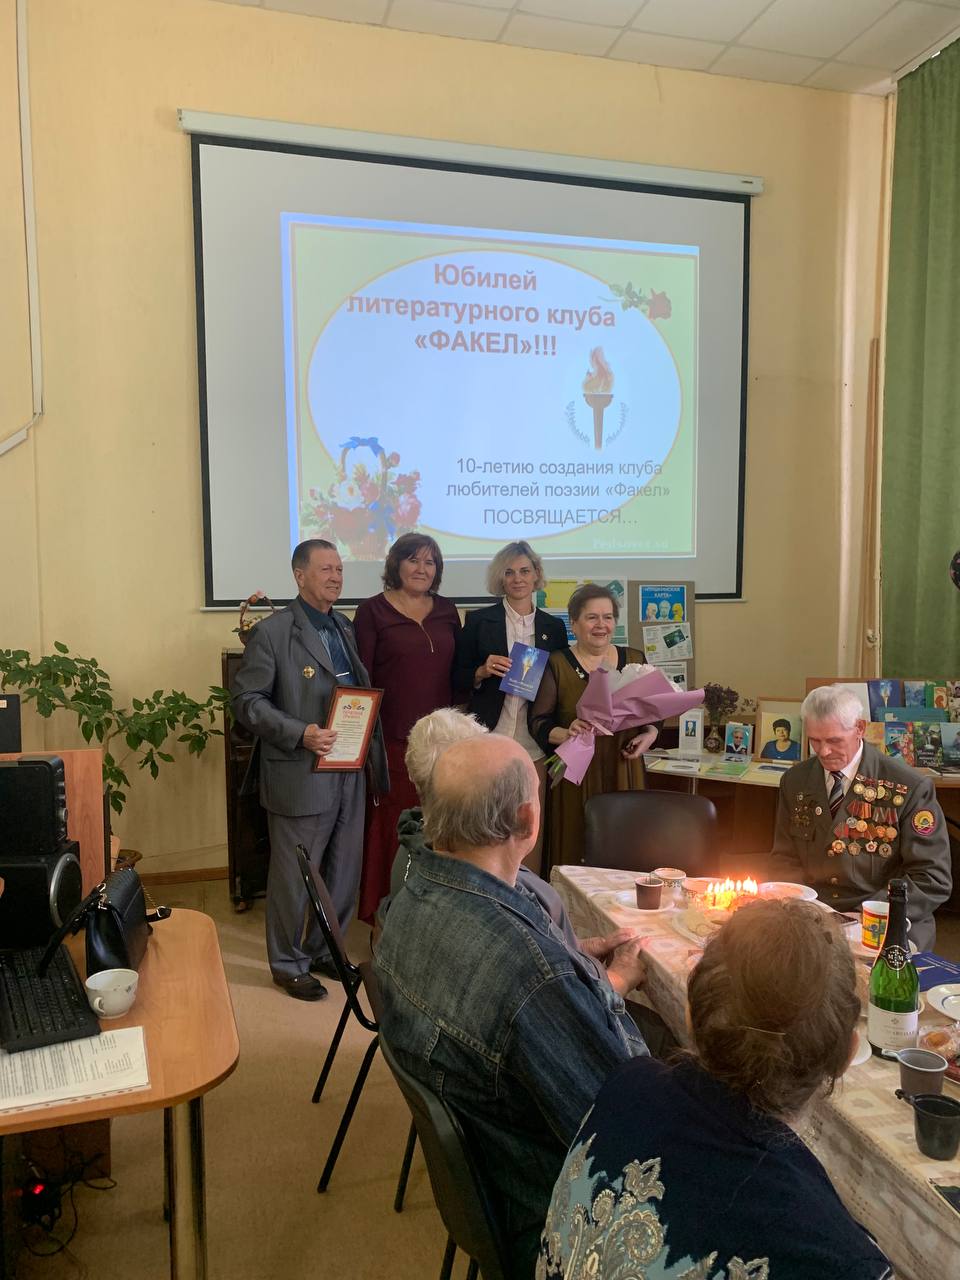 8 сентября в рамках празднования 433-летия города Саратова в библиотеке № 10 Ленинского района г.Саратова состоялось заседание, посвященное десятилетию создания поэтического клуба  «Факел»